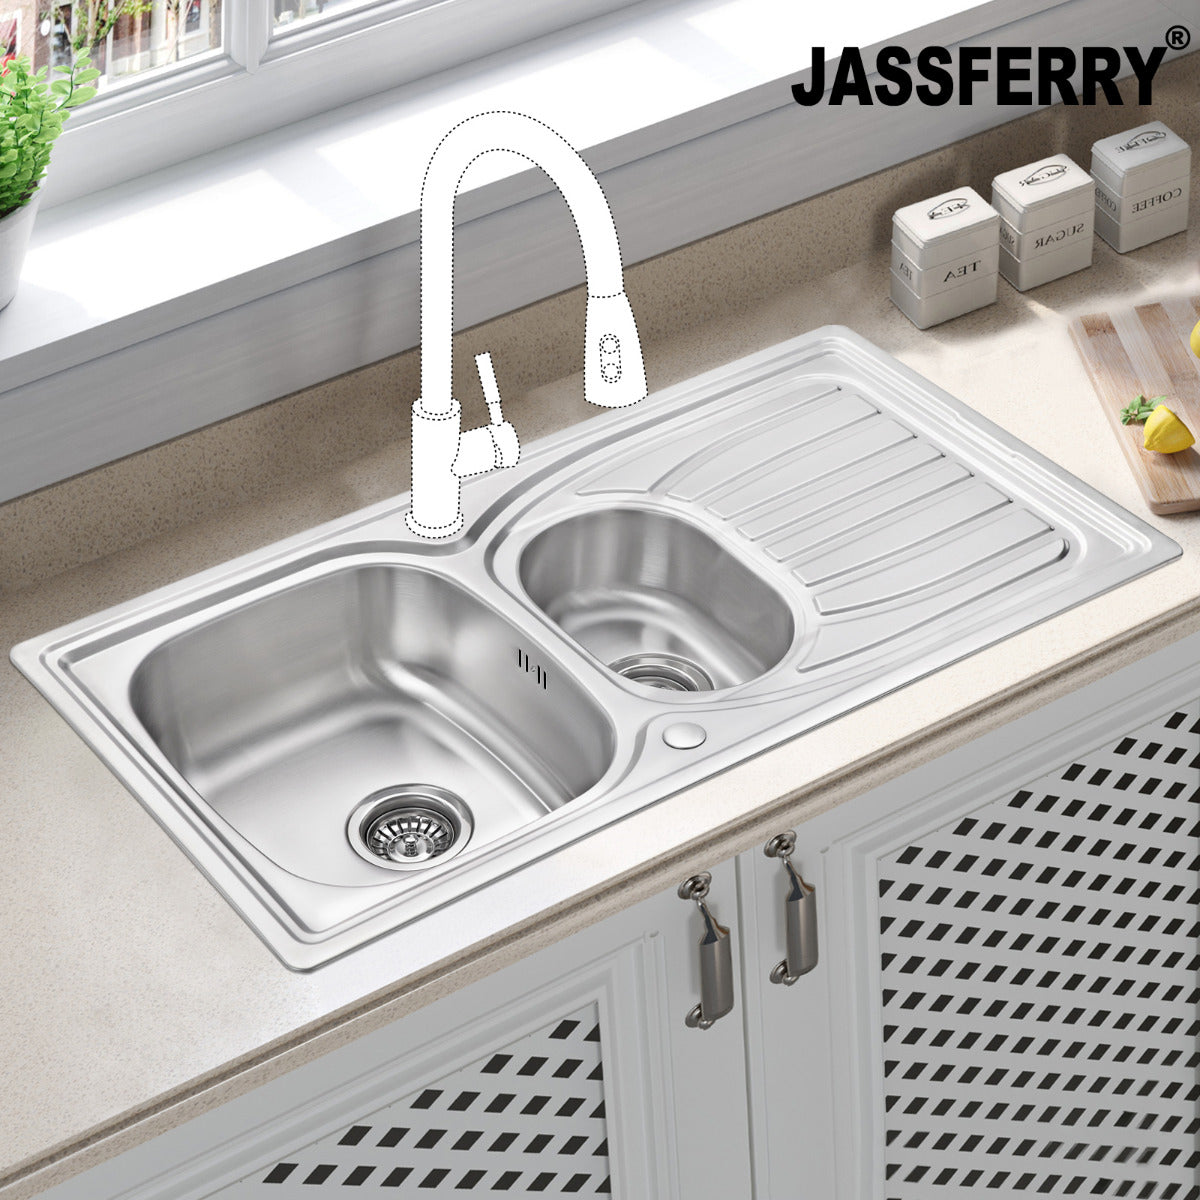 JassferryJASSFERRY Stainless Steel Kitchen Sink Inset One Half Bowl Reversible Drainer - 954Kitchen Sinks